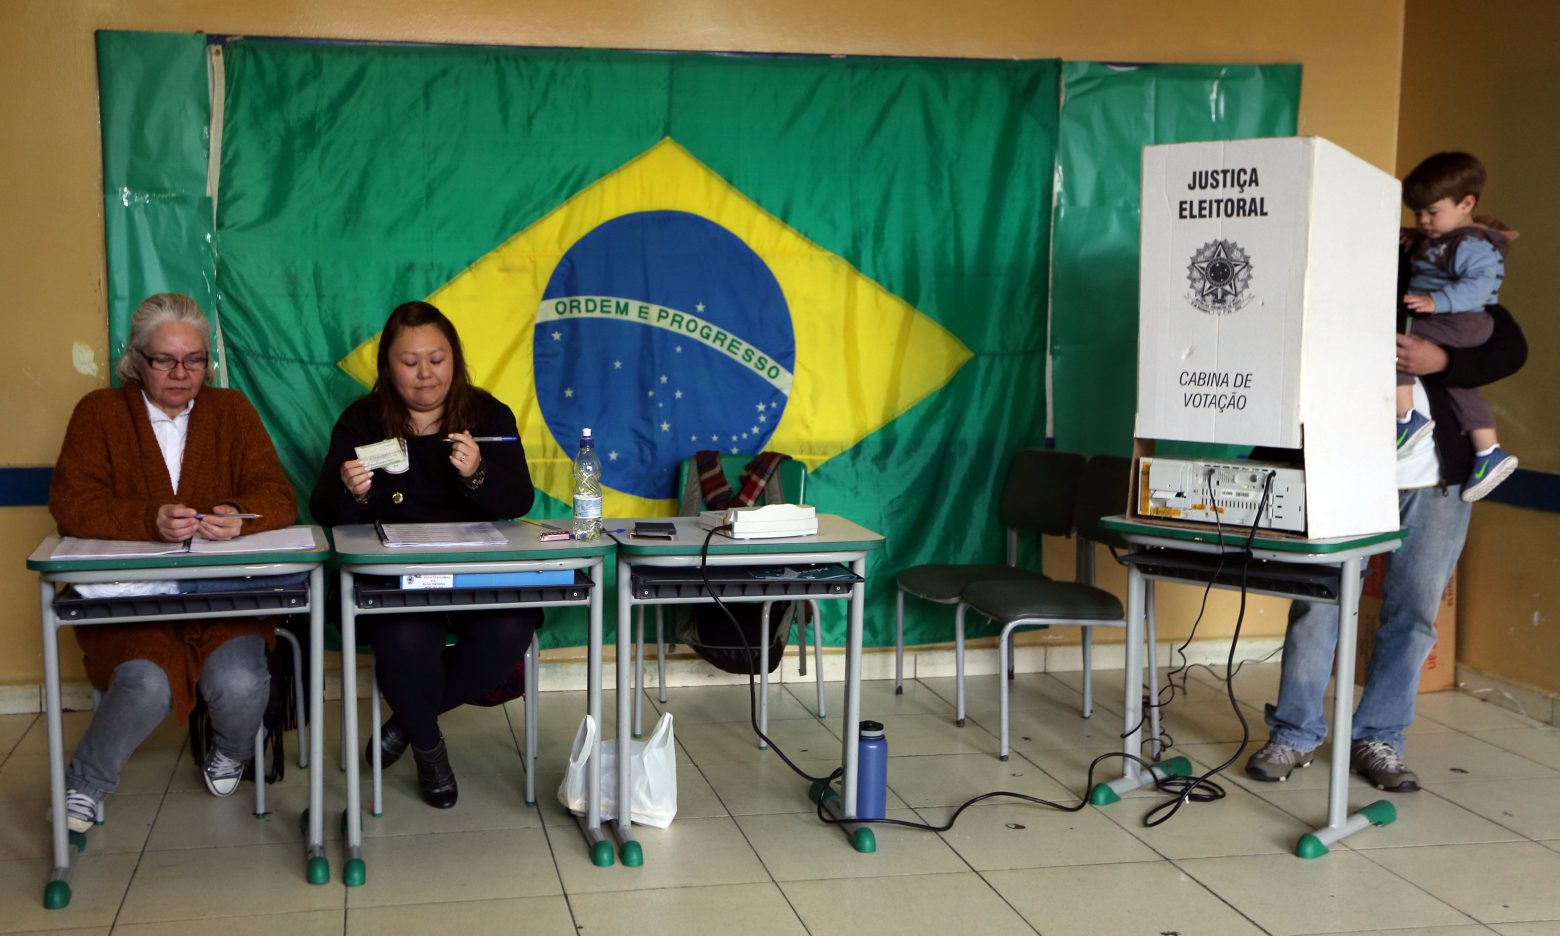 Βραζιλία - Ο Λούλα έχει μεγάλο προβάδισμα έναντι του Μπολσονάρο σύμφωνα με δημοσκόπηση